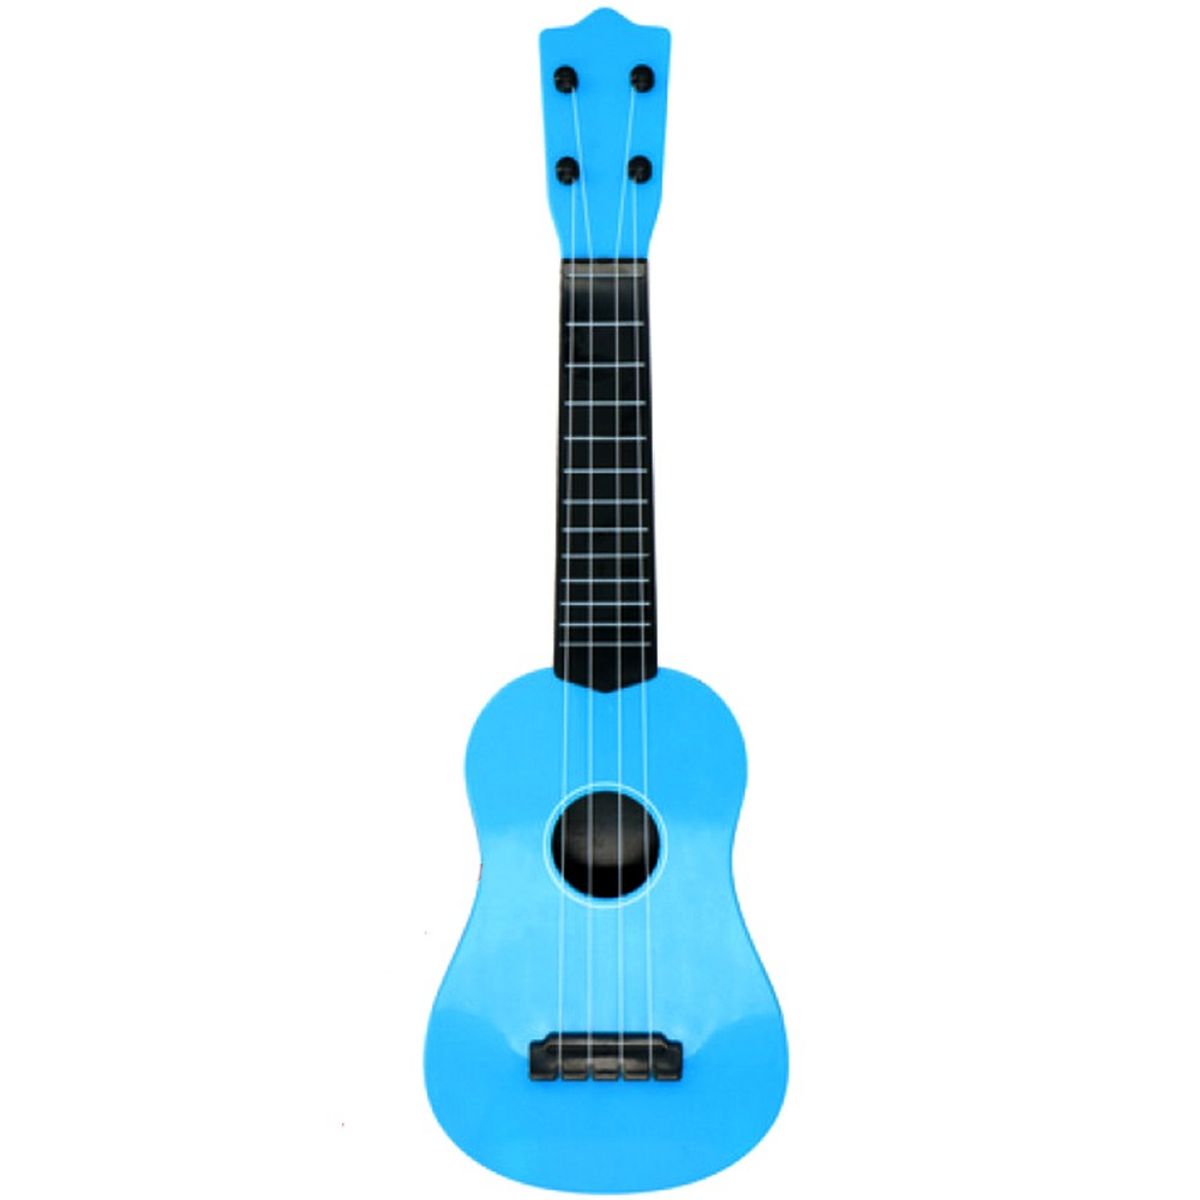  Guitare acoustique folk 57 cm 4 cordes enfant jouet bleu